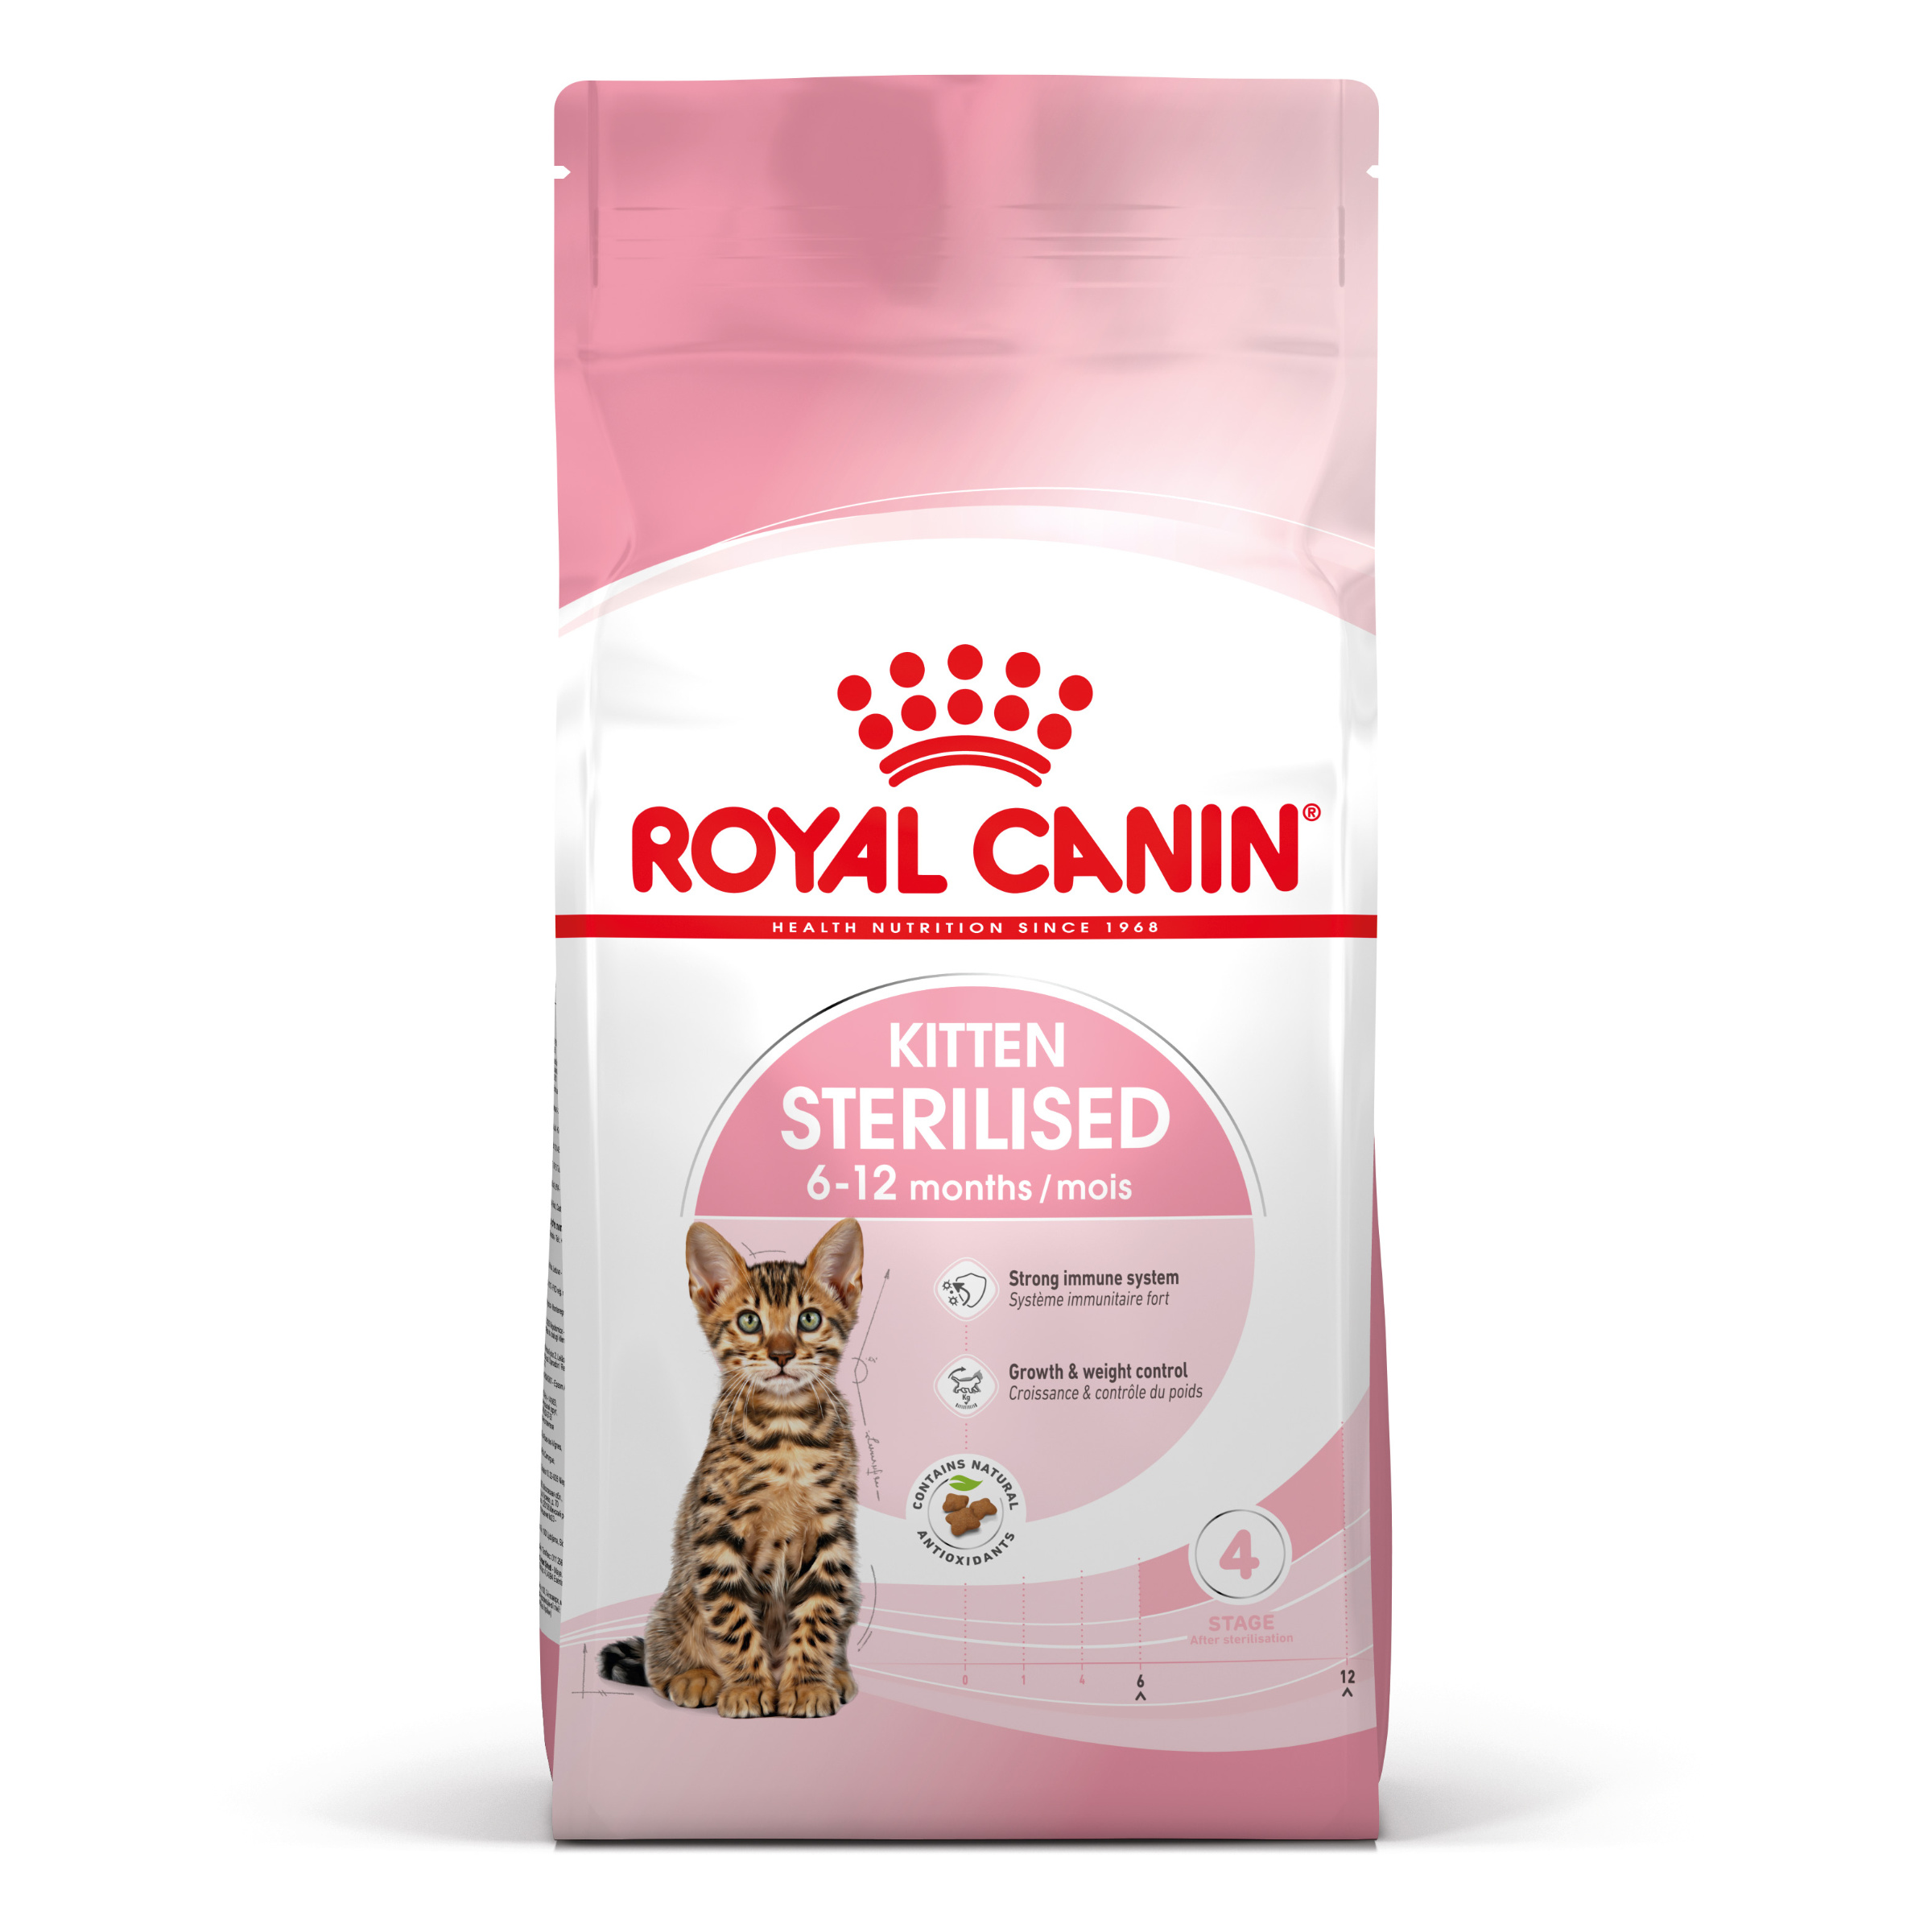 Royal Canin Kitten Sterilised - Aliment pour chats - Spécial chatons. stérilisés (de 6 à 12 mois) - 400g